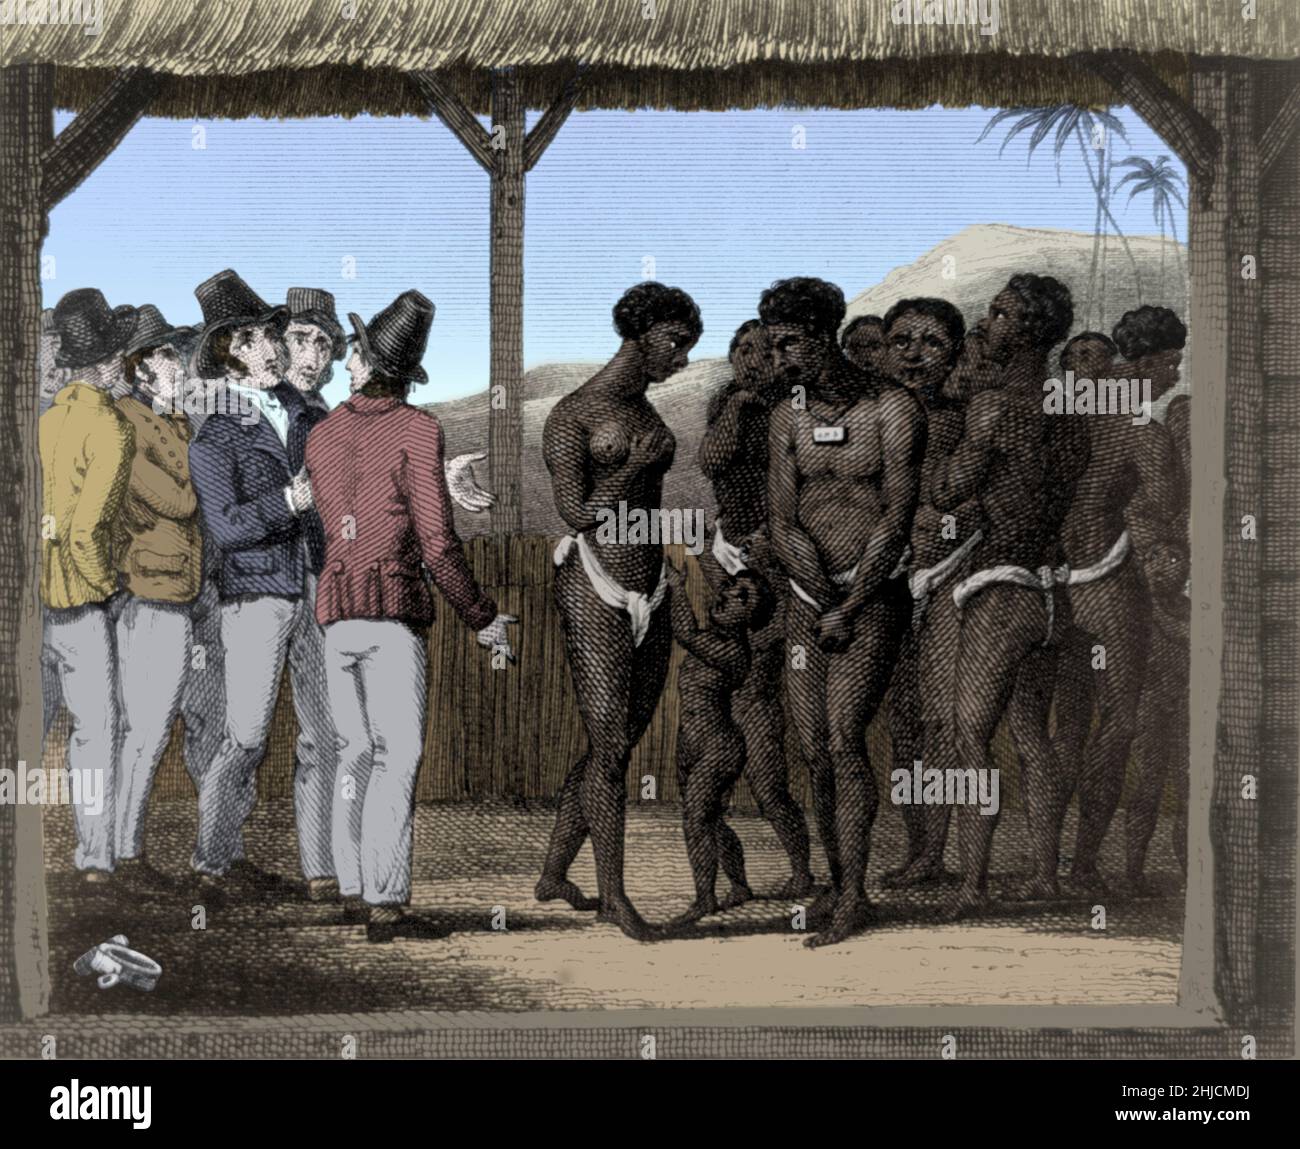 Schiavi esposti per la vendita. Il commercio degli schiavi dell'Atlantico ha coinvolto il trasporto da parte dei commercianti degli schiavi della gente africana schiavizzata, principalmente alle Americhe. La stragrande maggioranza di coloro che sono stati schiavi e trasportati nel commercio transatlantico degli schiavi sono stati africani dall'Africa centrale e occidentale, che erano stati venduti da altri africani occidentali ai commercianti di schiavi dell'Europa occidentale, che li hanno portati nelle Americhe. Le economie del Sud Atlantico e dei Caraibi dipendevano in particolare dalla fornitura di manodopera sicura per la produzione di colture di materie prime, facendo vendere merci e abbigliamento in Europa. Nessun artista accreditato Foto Stock